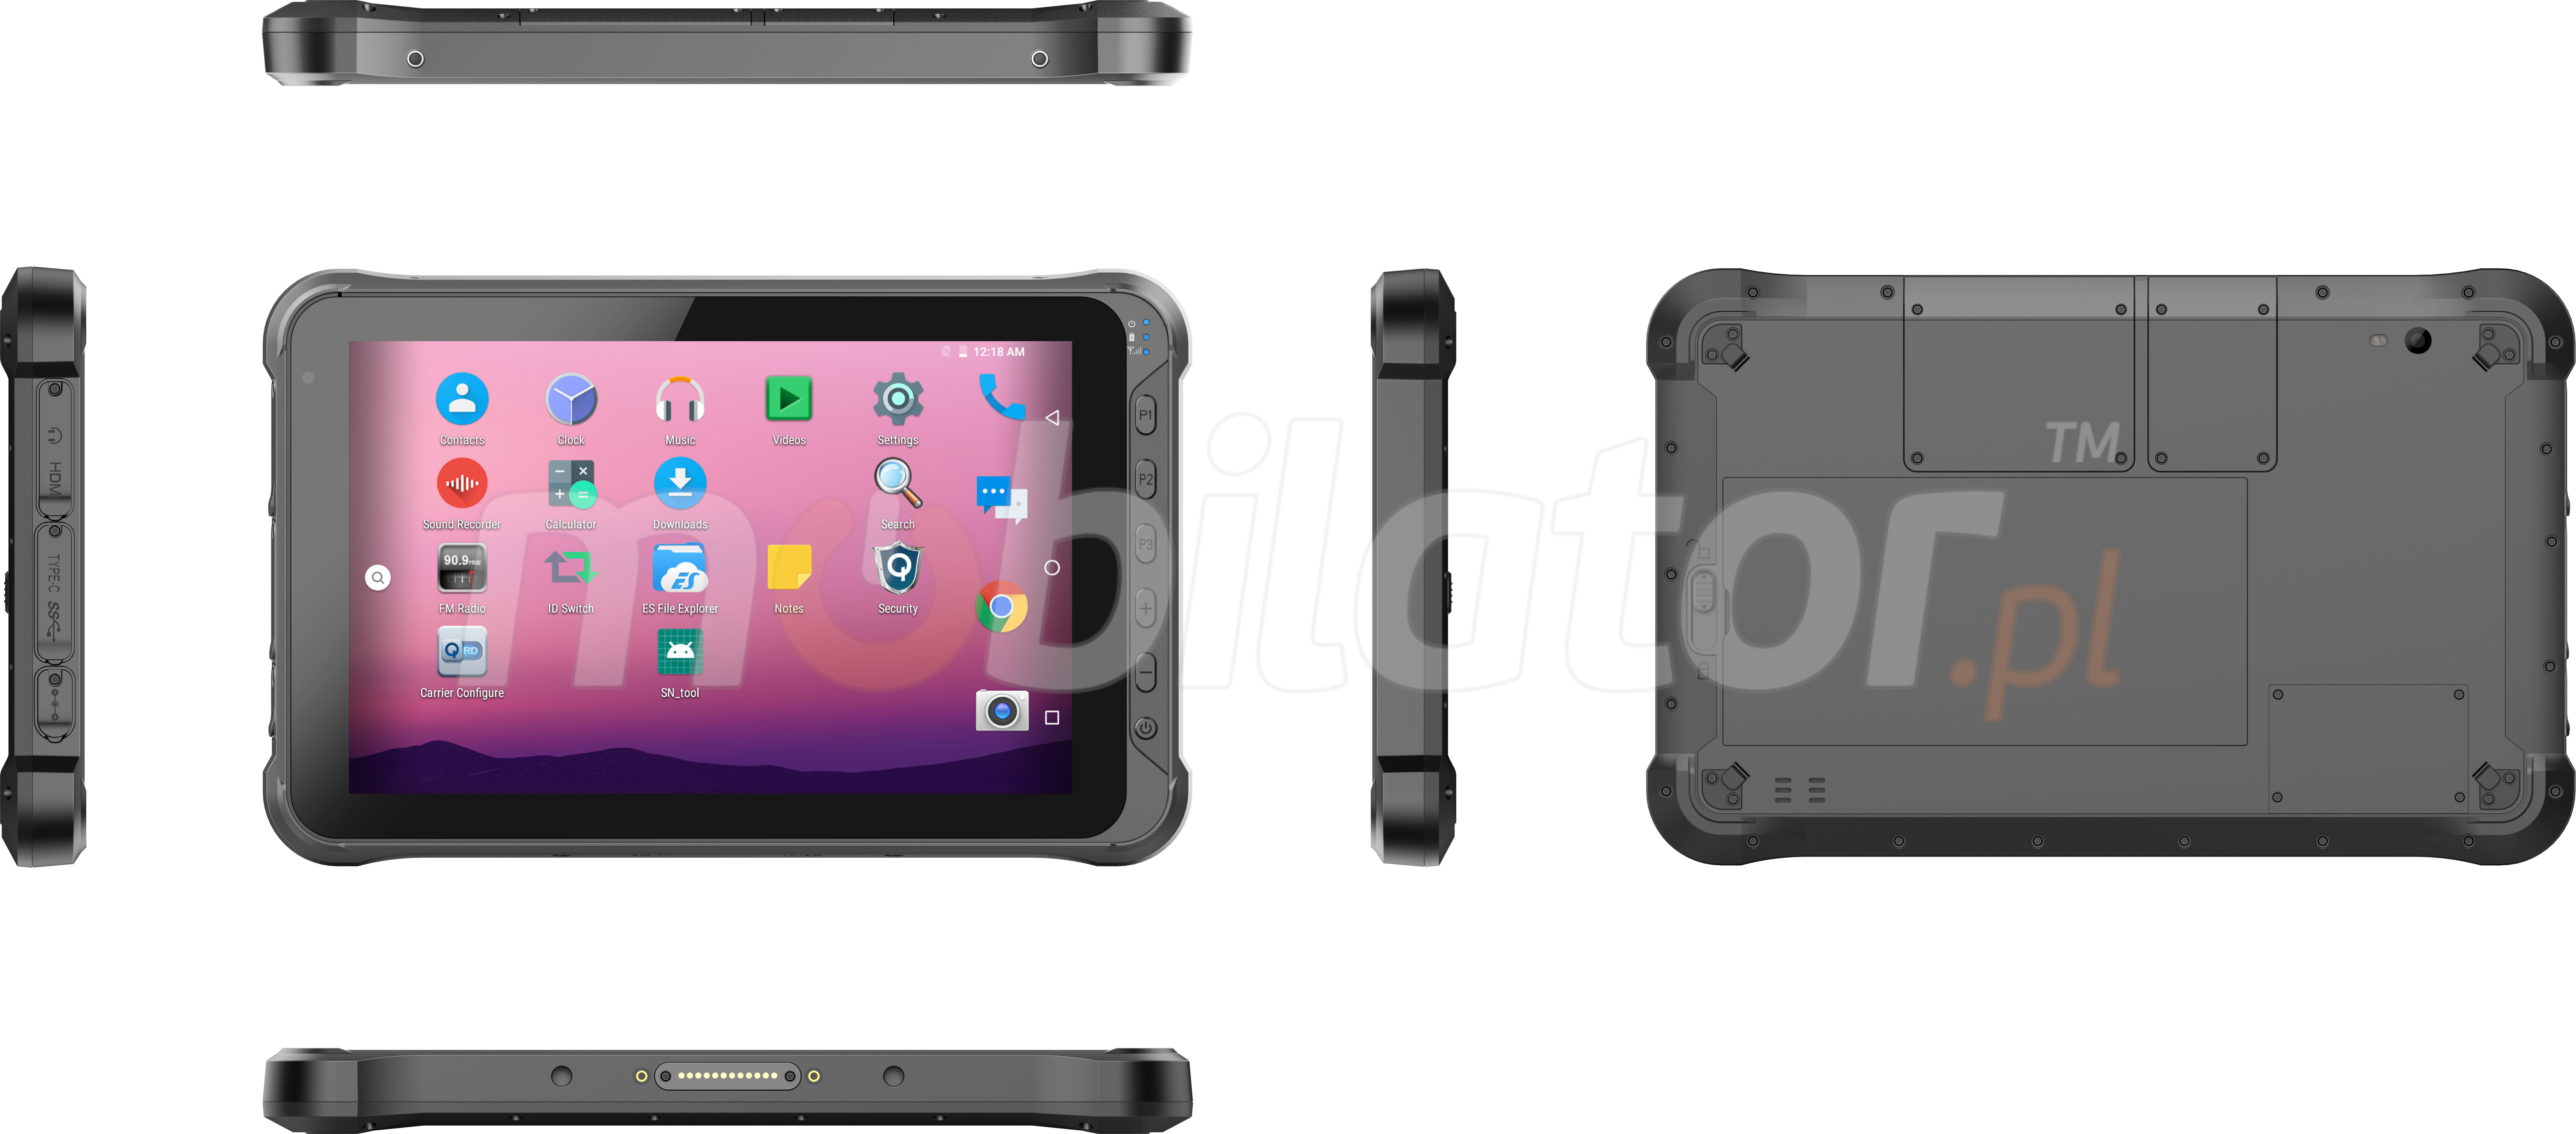 Emdoor Q15 v.5 - Odporny na upadki dziesiciocalowy tablet z Bluetooth 4.1, 4G, 4GB RAM pamici, dyskiem 64GB, skanerem UHF, czytnikiem kodw 2D N3680 Honeywell